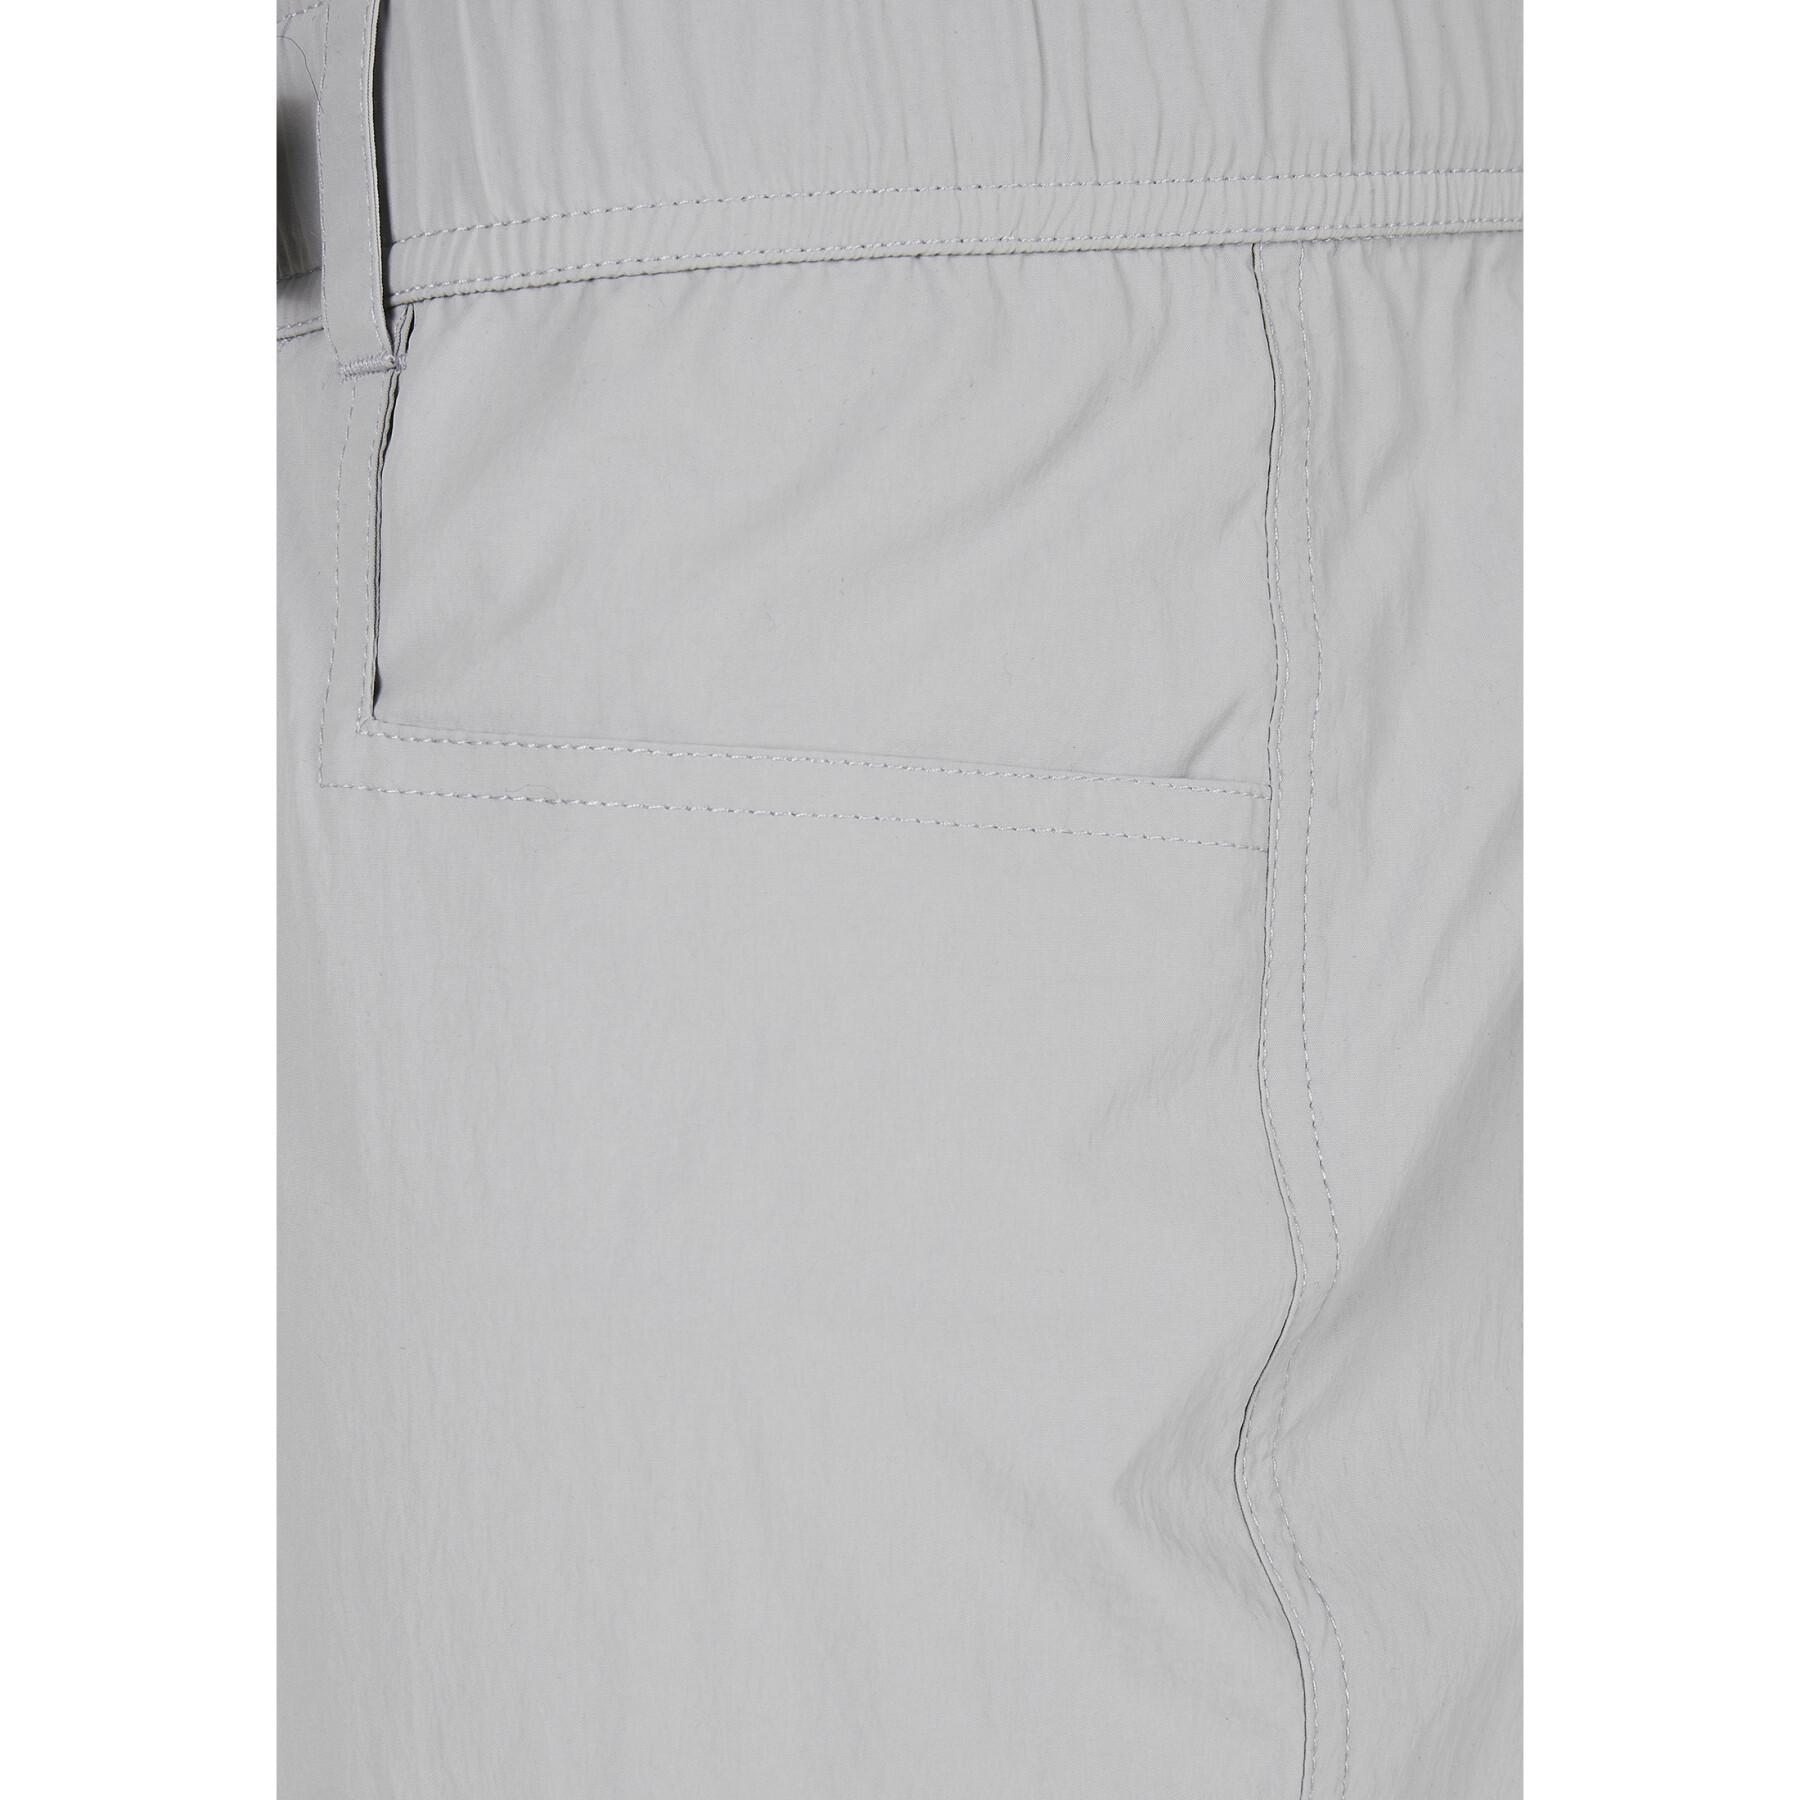 Spodnie Cargo Urban Classics adjustable nylon (duże rozmiary)